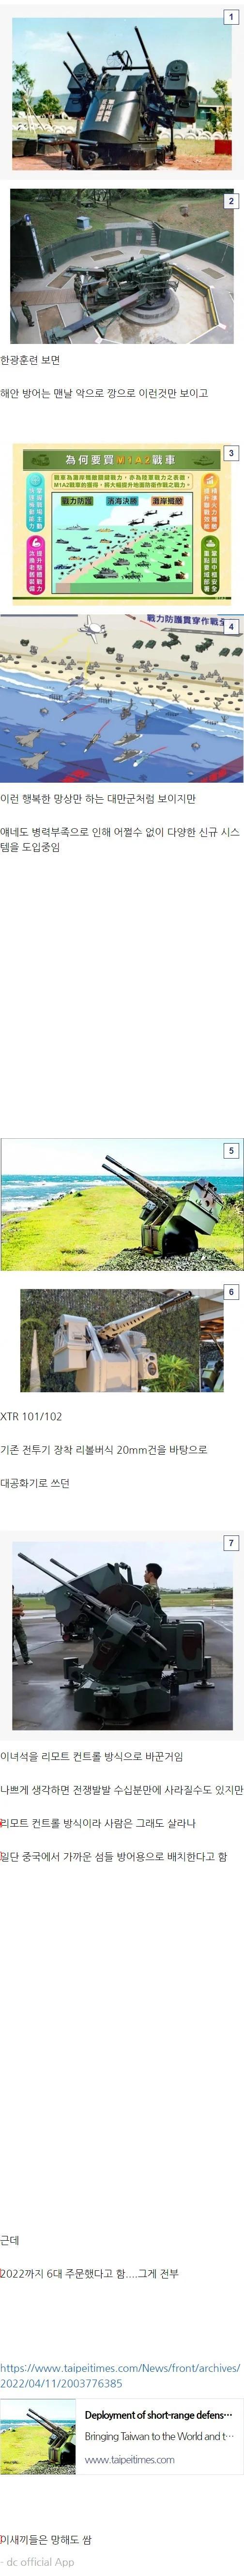 台湾の最新防衛システムである中国のピタテラ